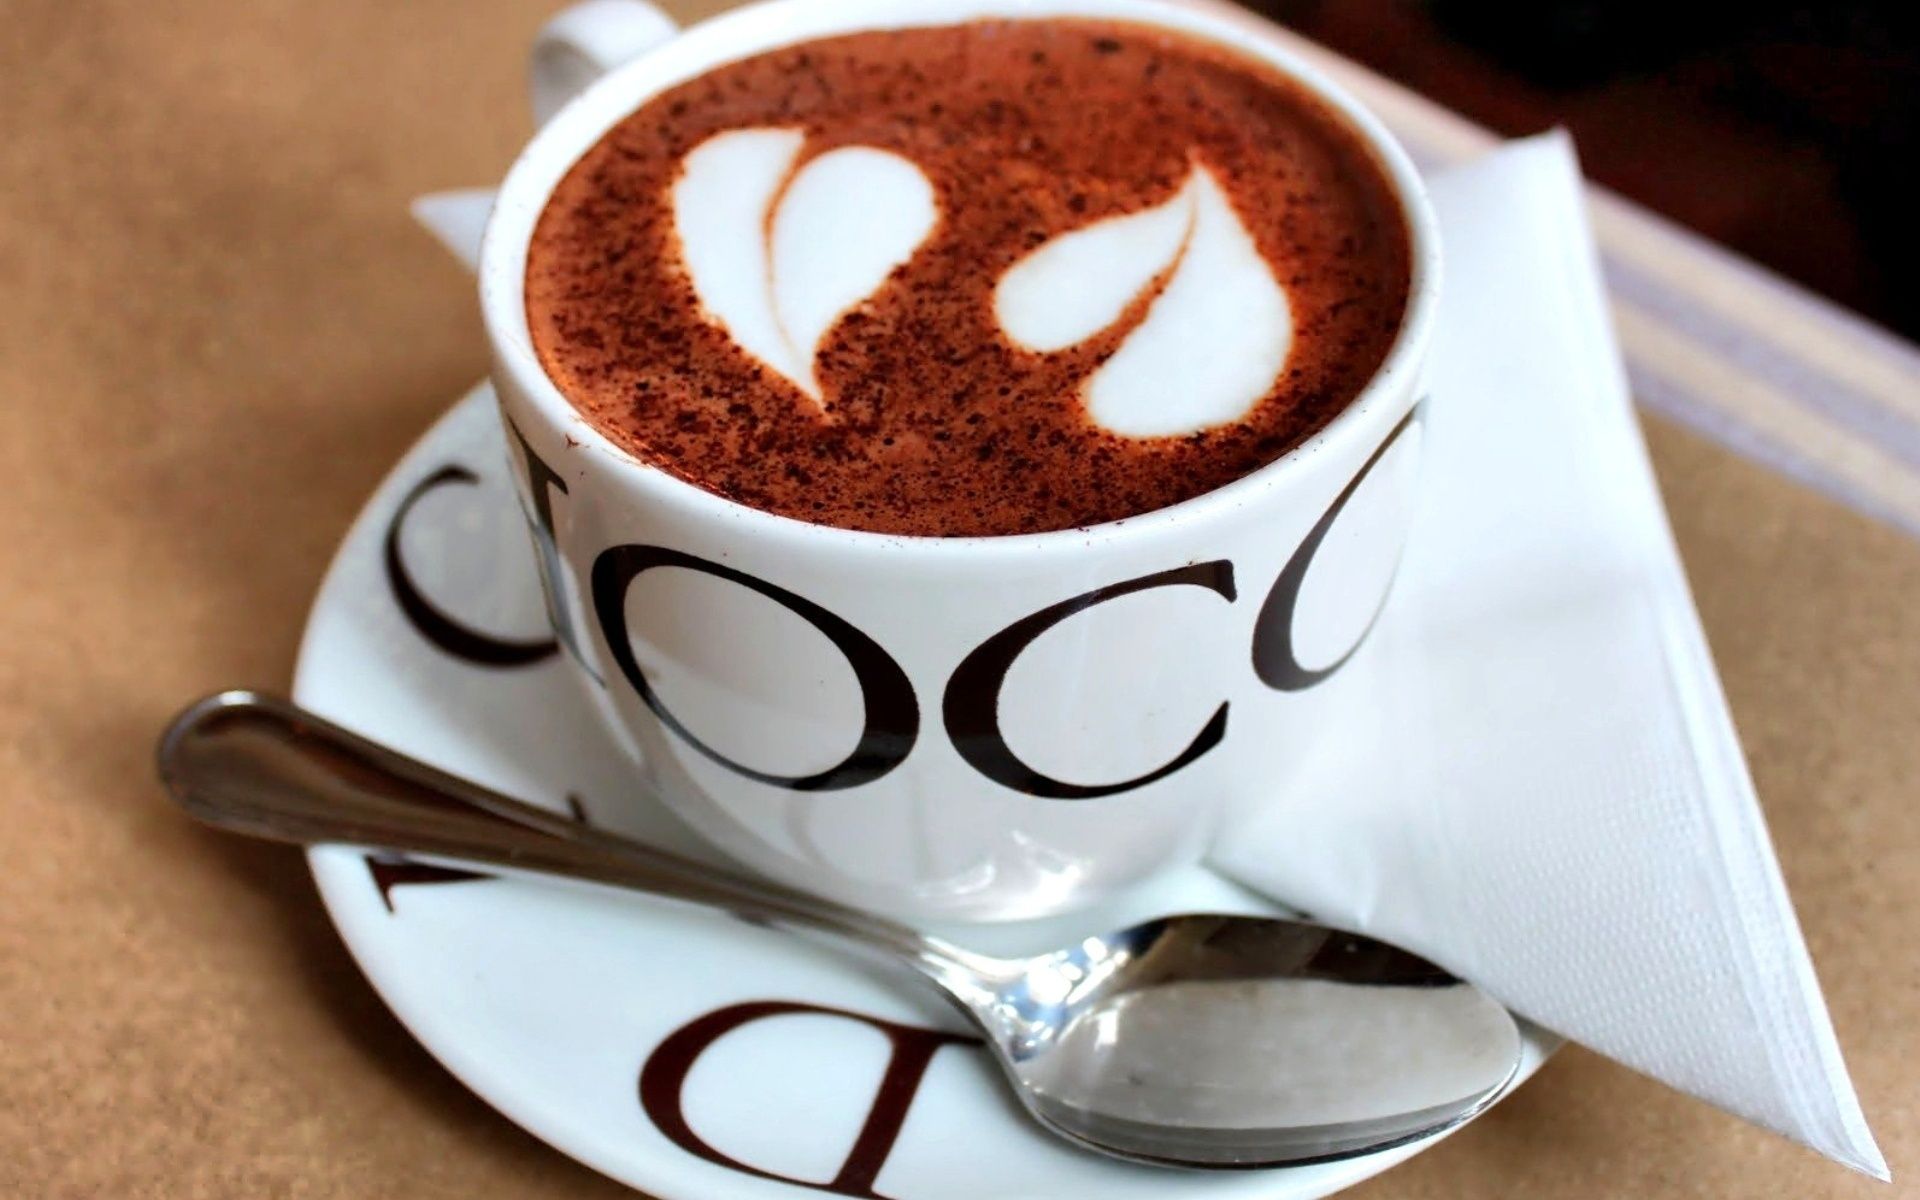 кофе кубок эспрессо капучино кофеин завтрак шоколад пить рассвет горячая крем ложка молоко кружка темный сахар вкусные пена еда